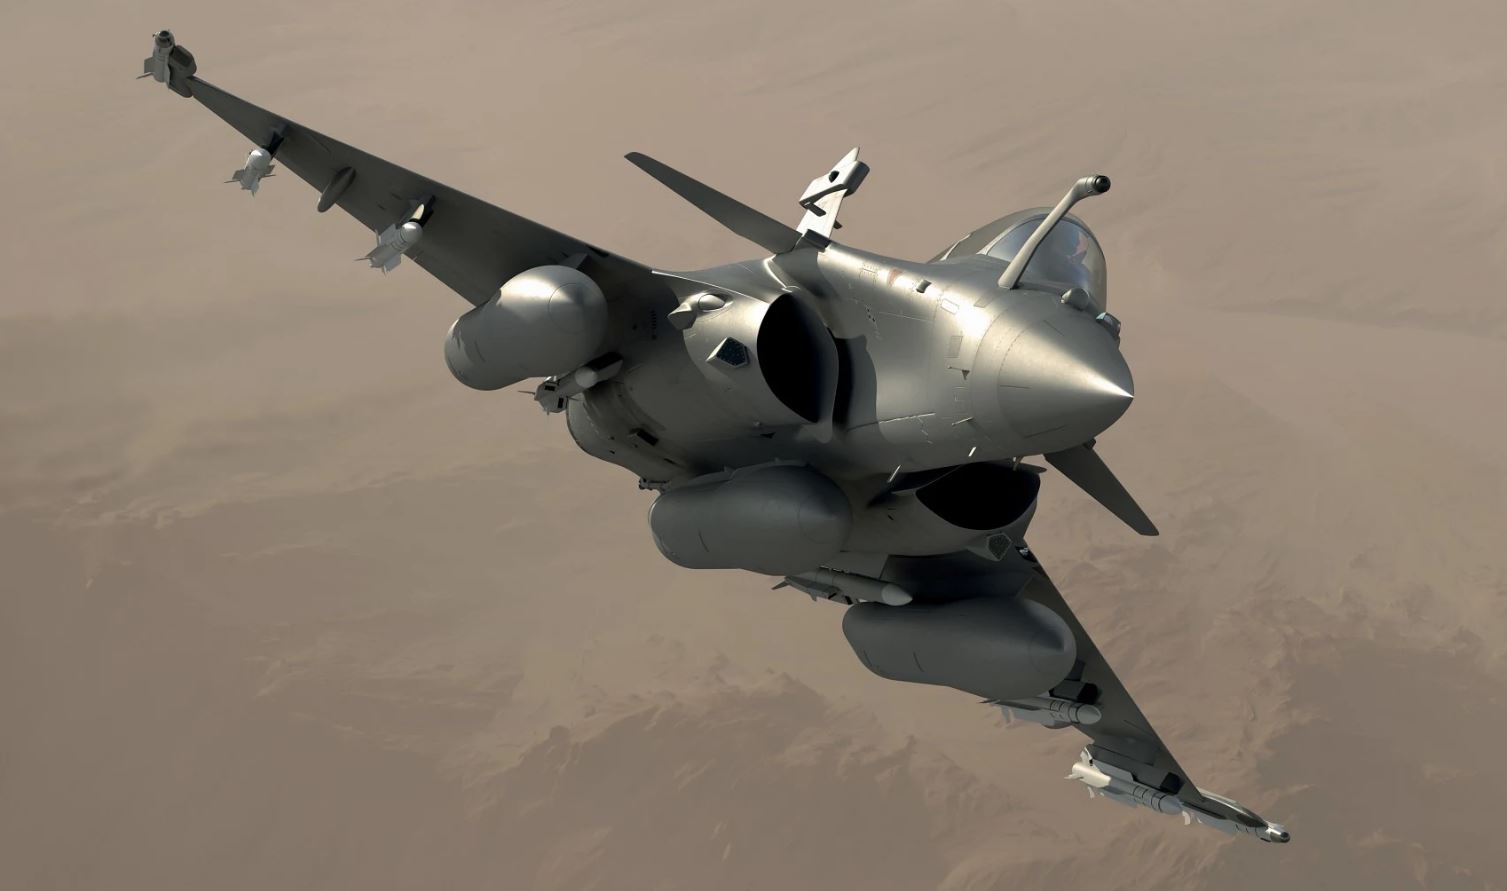 A França encomenda 42 caças Rafale no acordo Tranche 5, melhorando as capacidades da força aérea e apoiando a indústria nacional - ACE (Aerospace Central Europe)